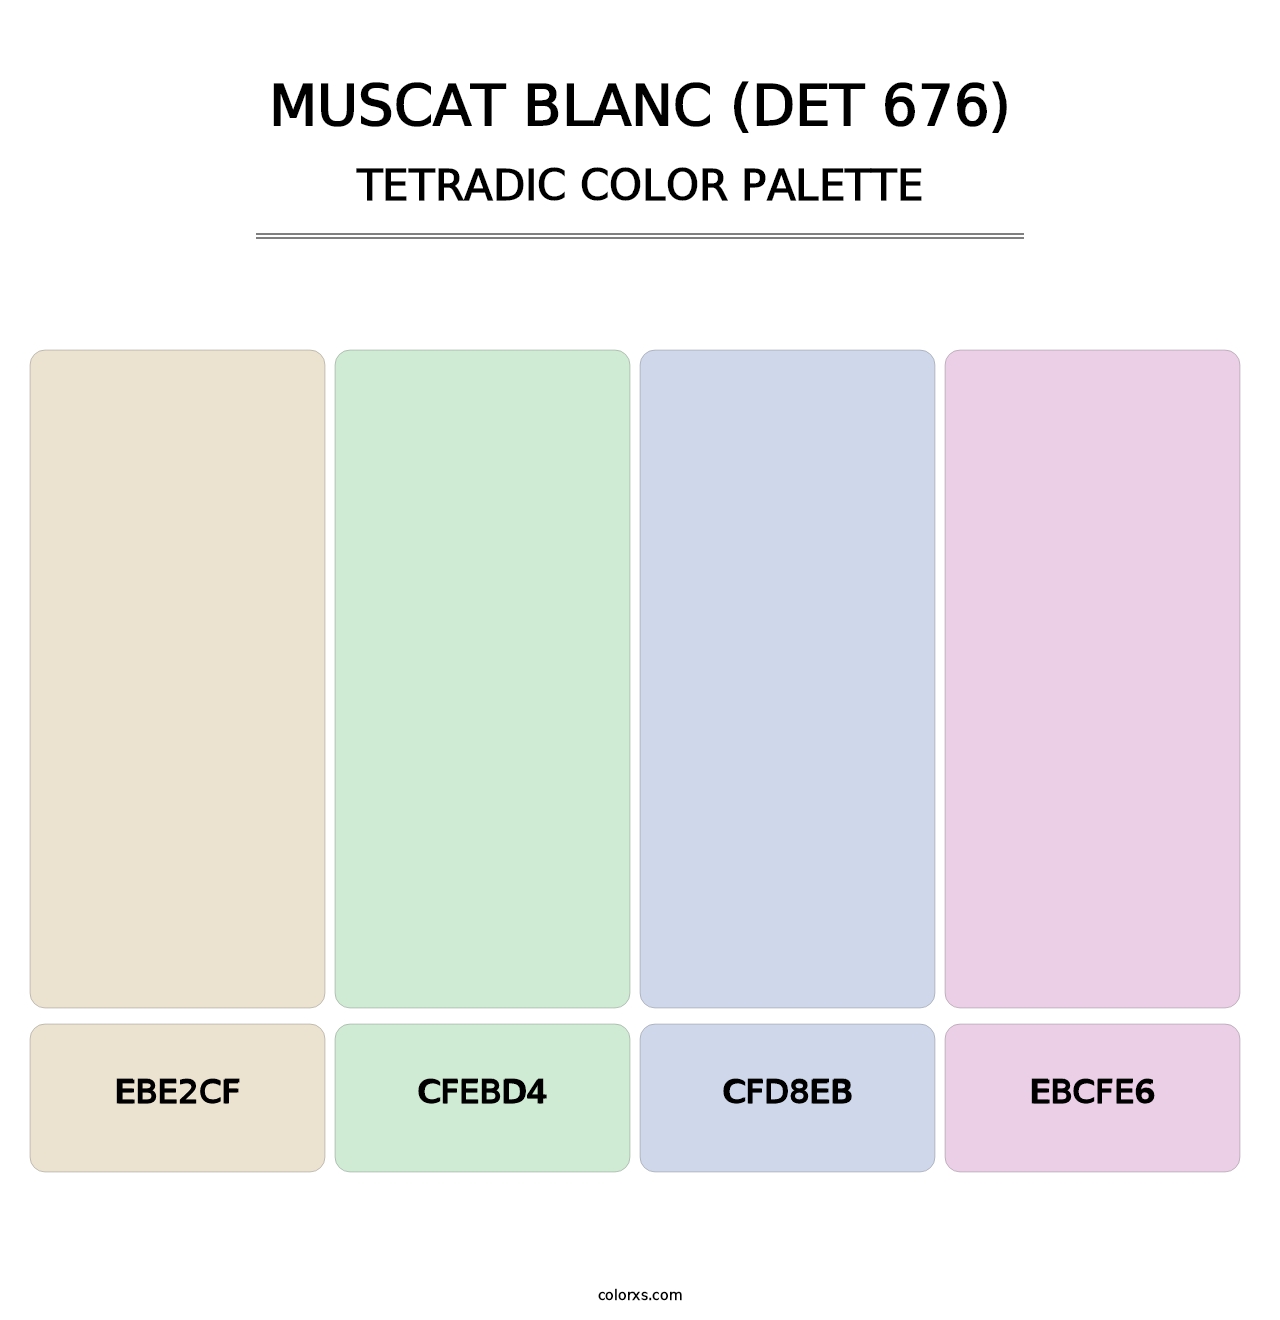 Muscat Blanc (DET 676) - Tetradic Color Palette